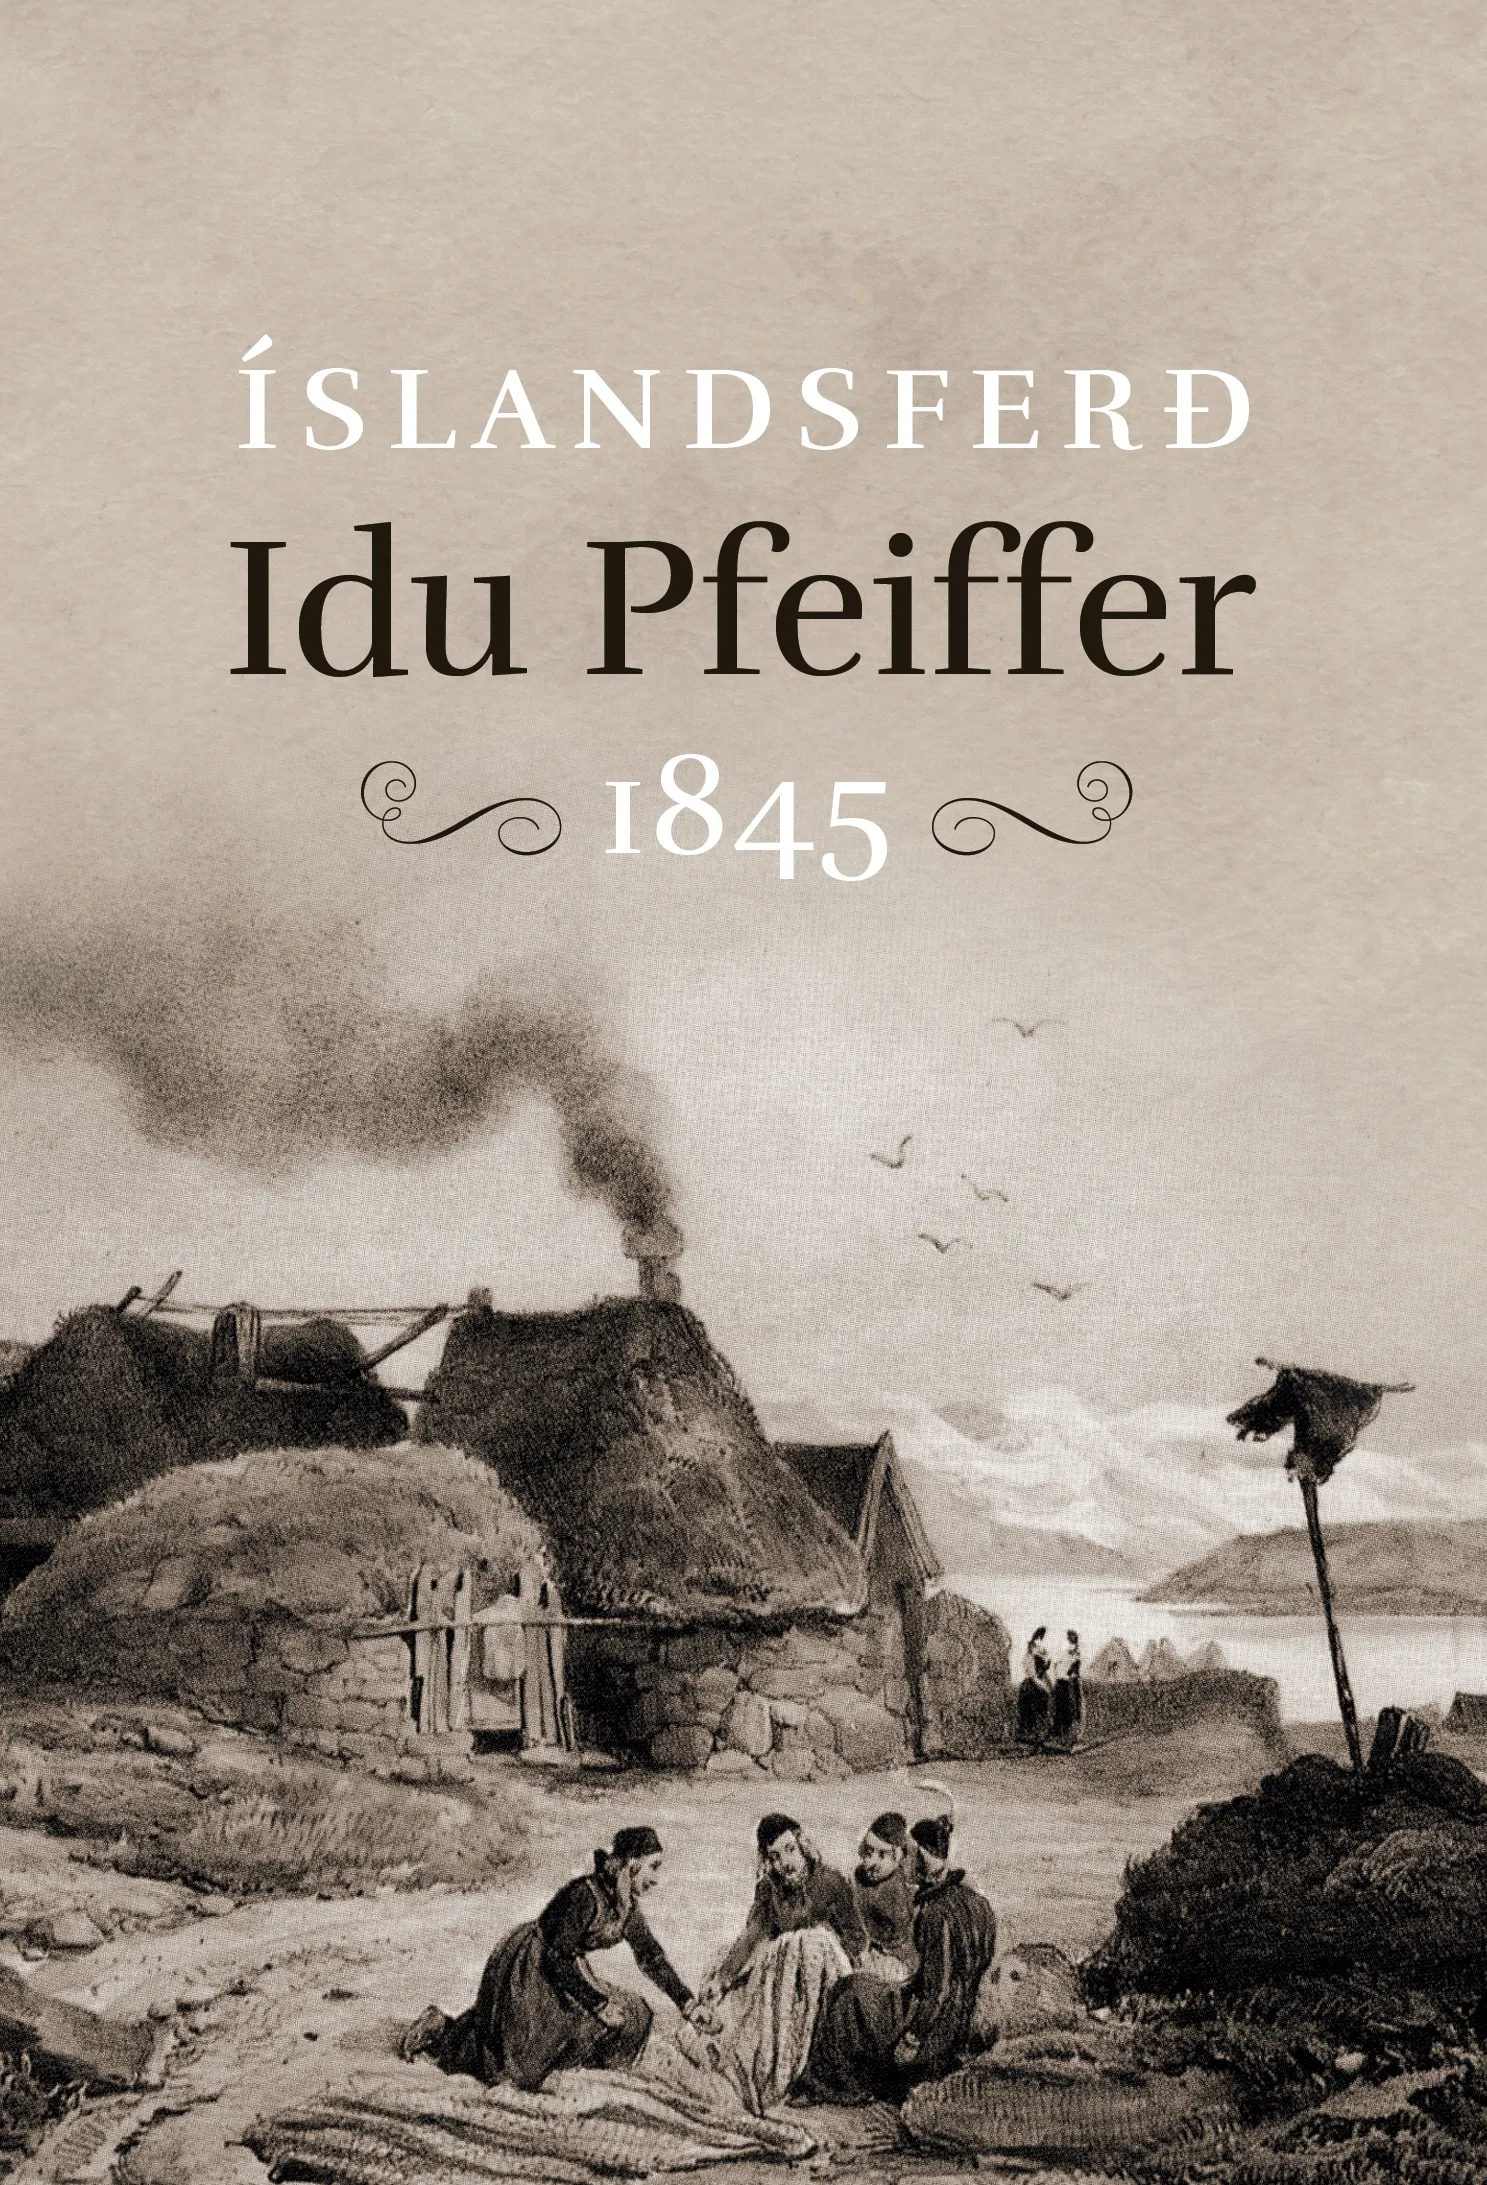 Bókakápa: Íslandsferð Idu Pfeiffer Guðmundur J. Guðmundsson þýddi og ritaði inngang